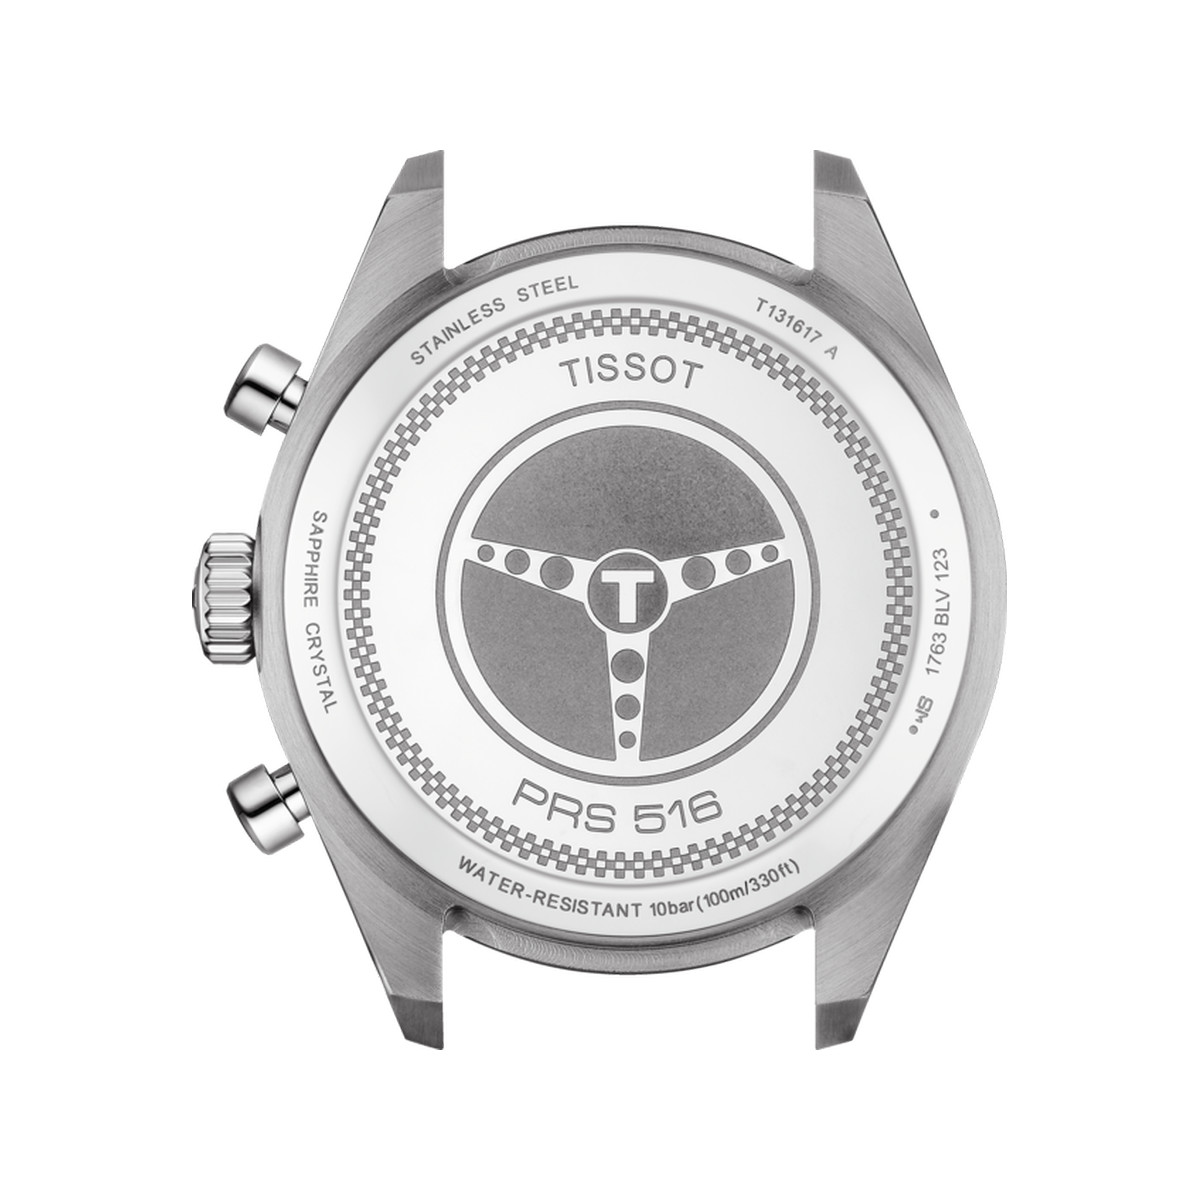 Montre Tissot homme chronographe acier cbracelet cuir brun - vue 3